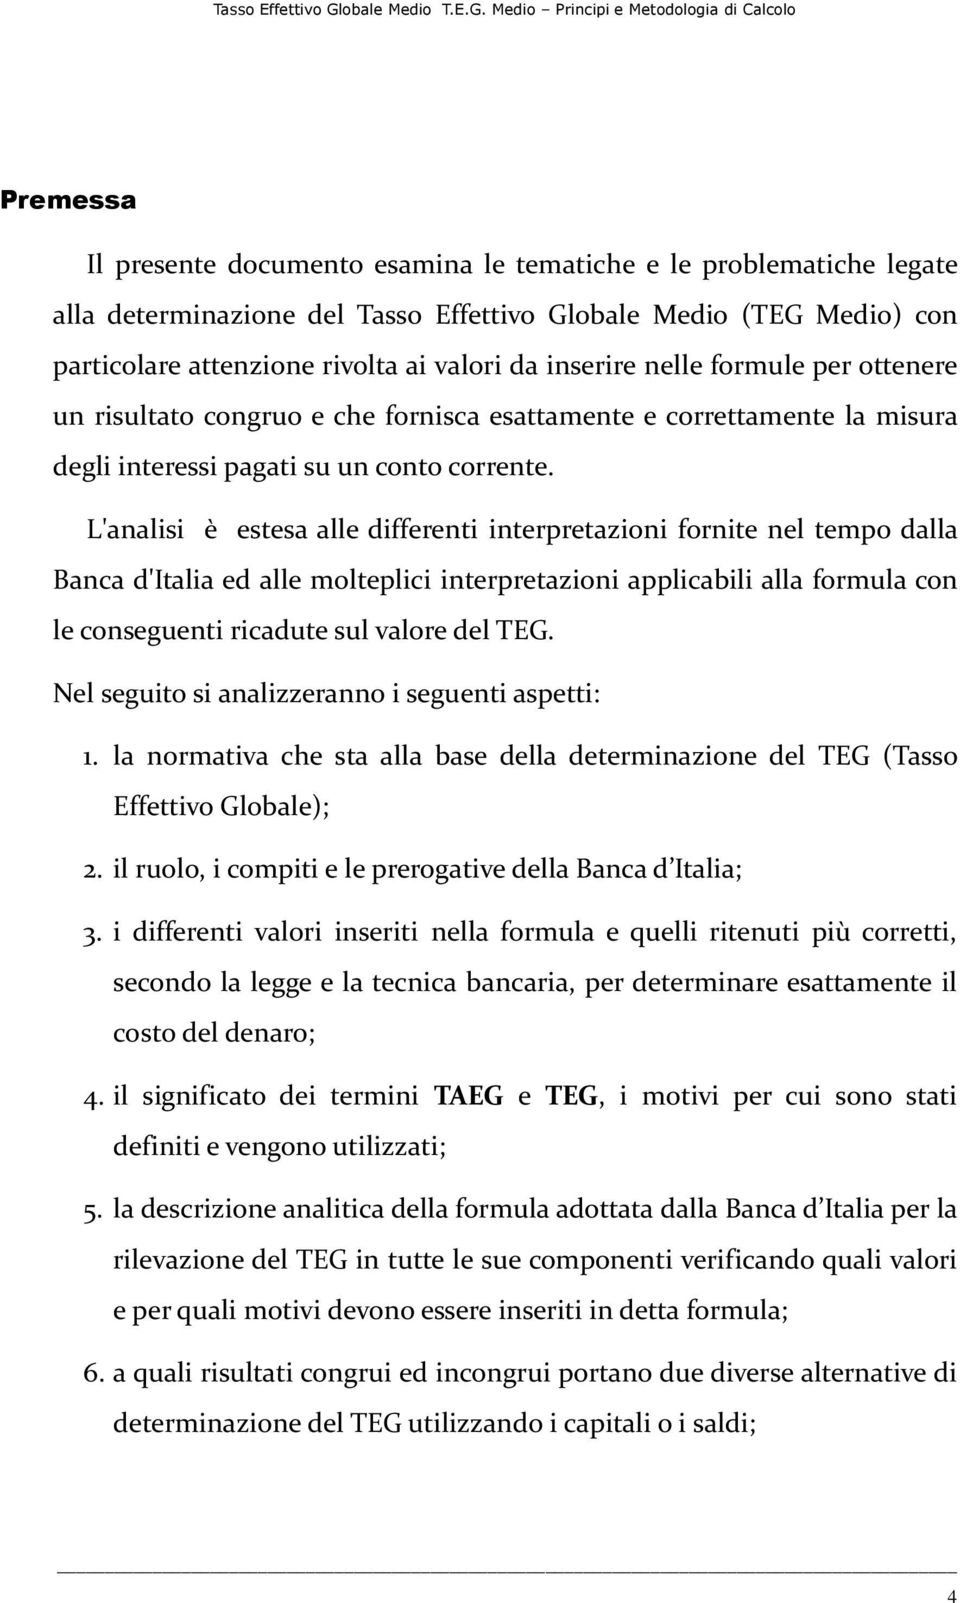 L'analisi è estesa alle differenti interpretazioni fornite nel tempo dalla Banca d'italia ed alle molteplici interpretazioni applicabili alla formula con le conseguenti ricadute sul valore del TEG.